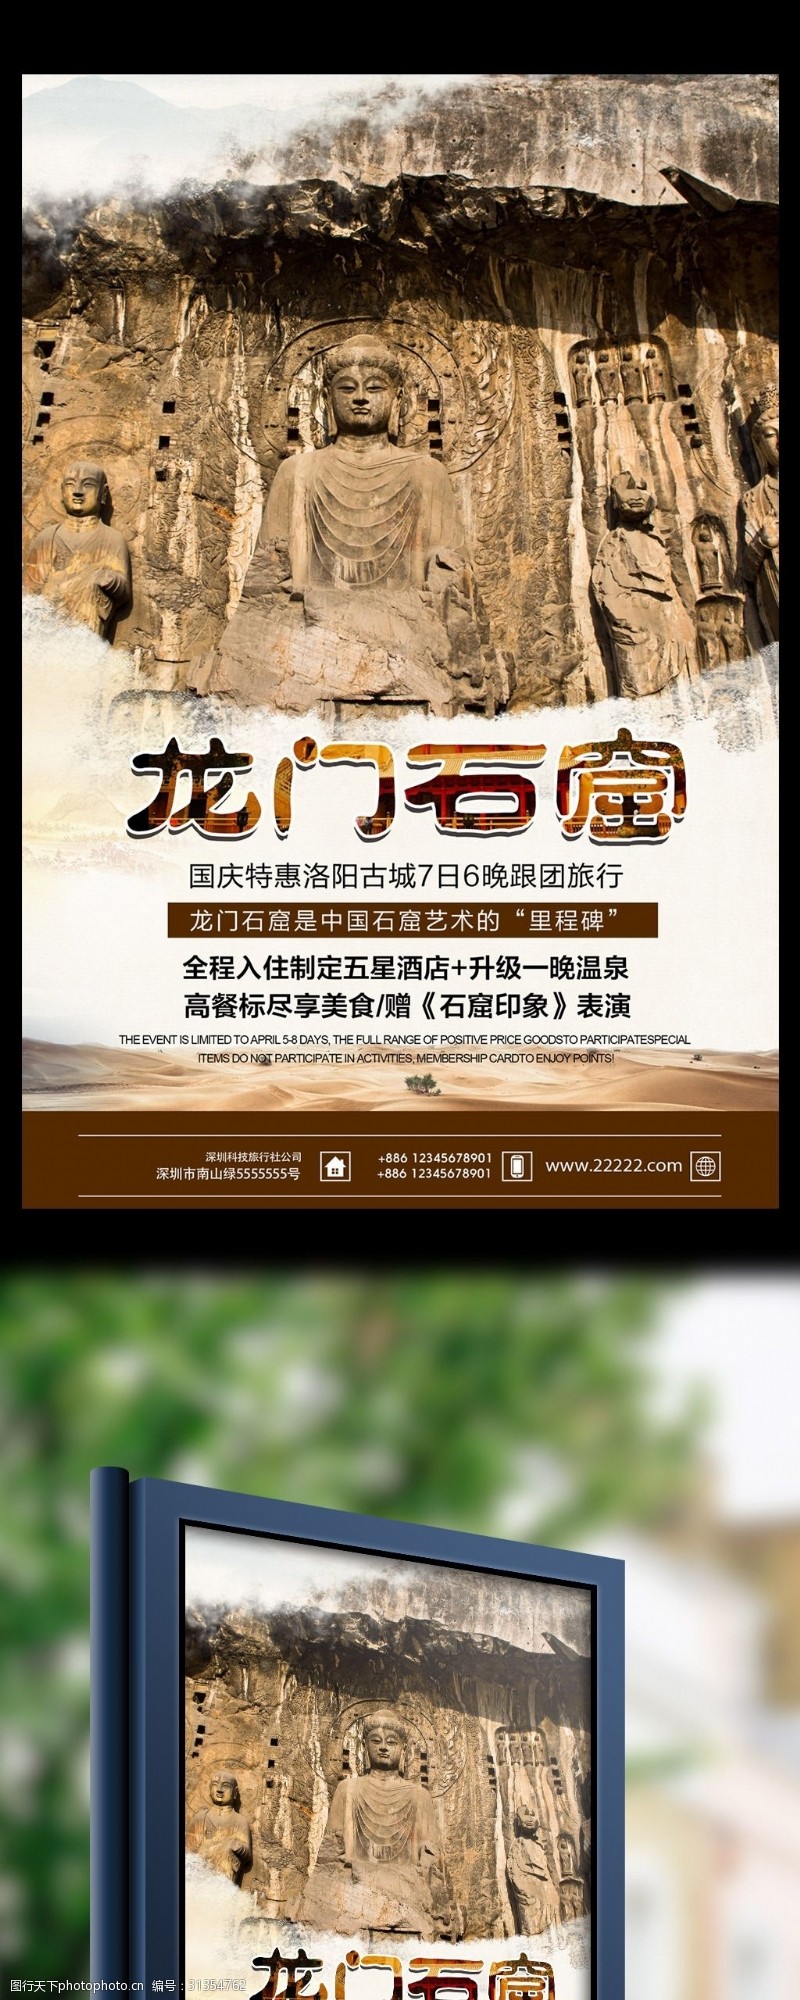 河南洛阳龙门石窟旅行社旅游宣传海报